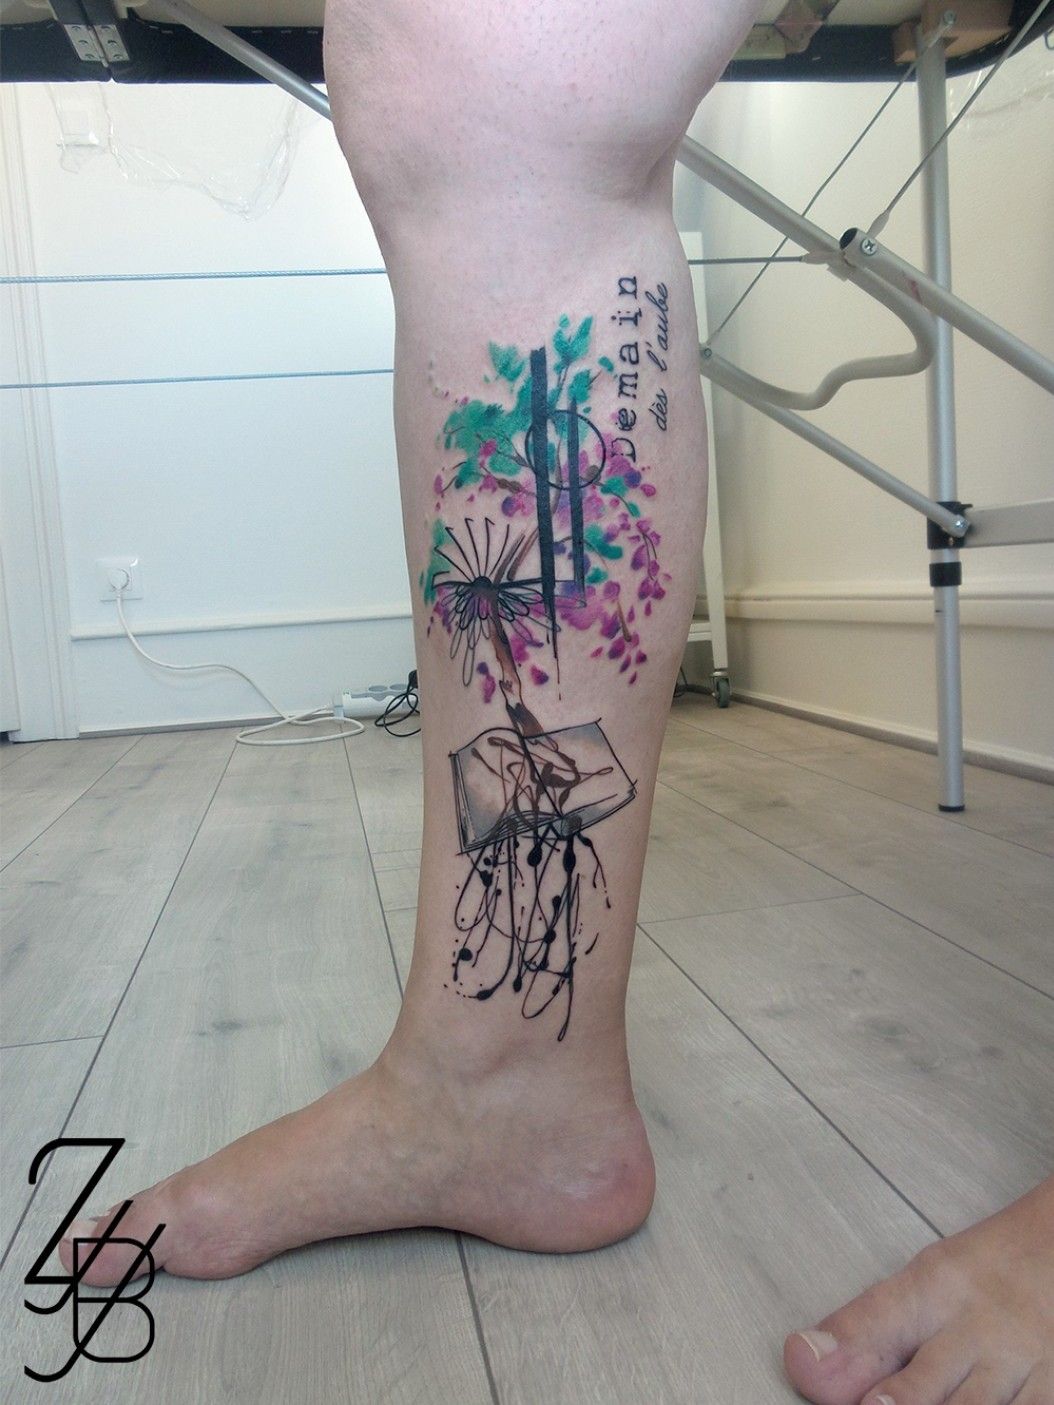 Clarissa Casagrande on Twitter My new tat  wisteria tattoo  httpstcodaVQR5knNP  Twitter